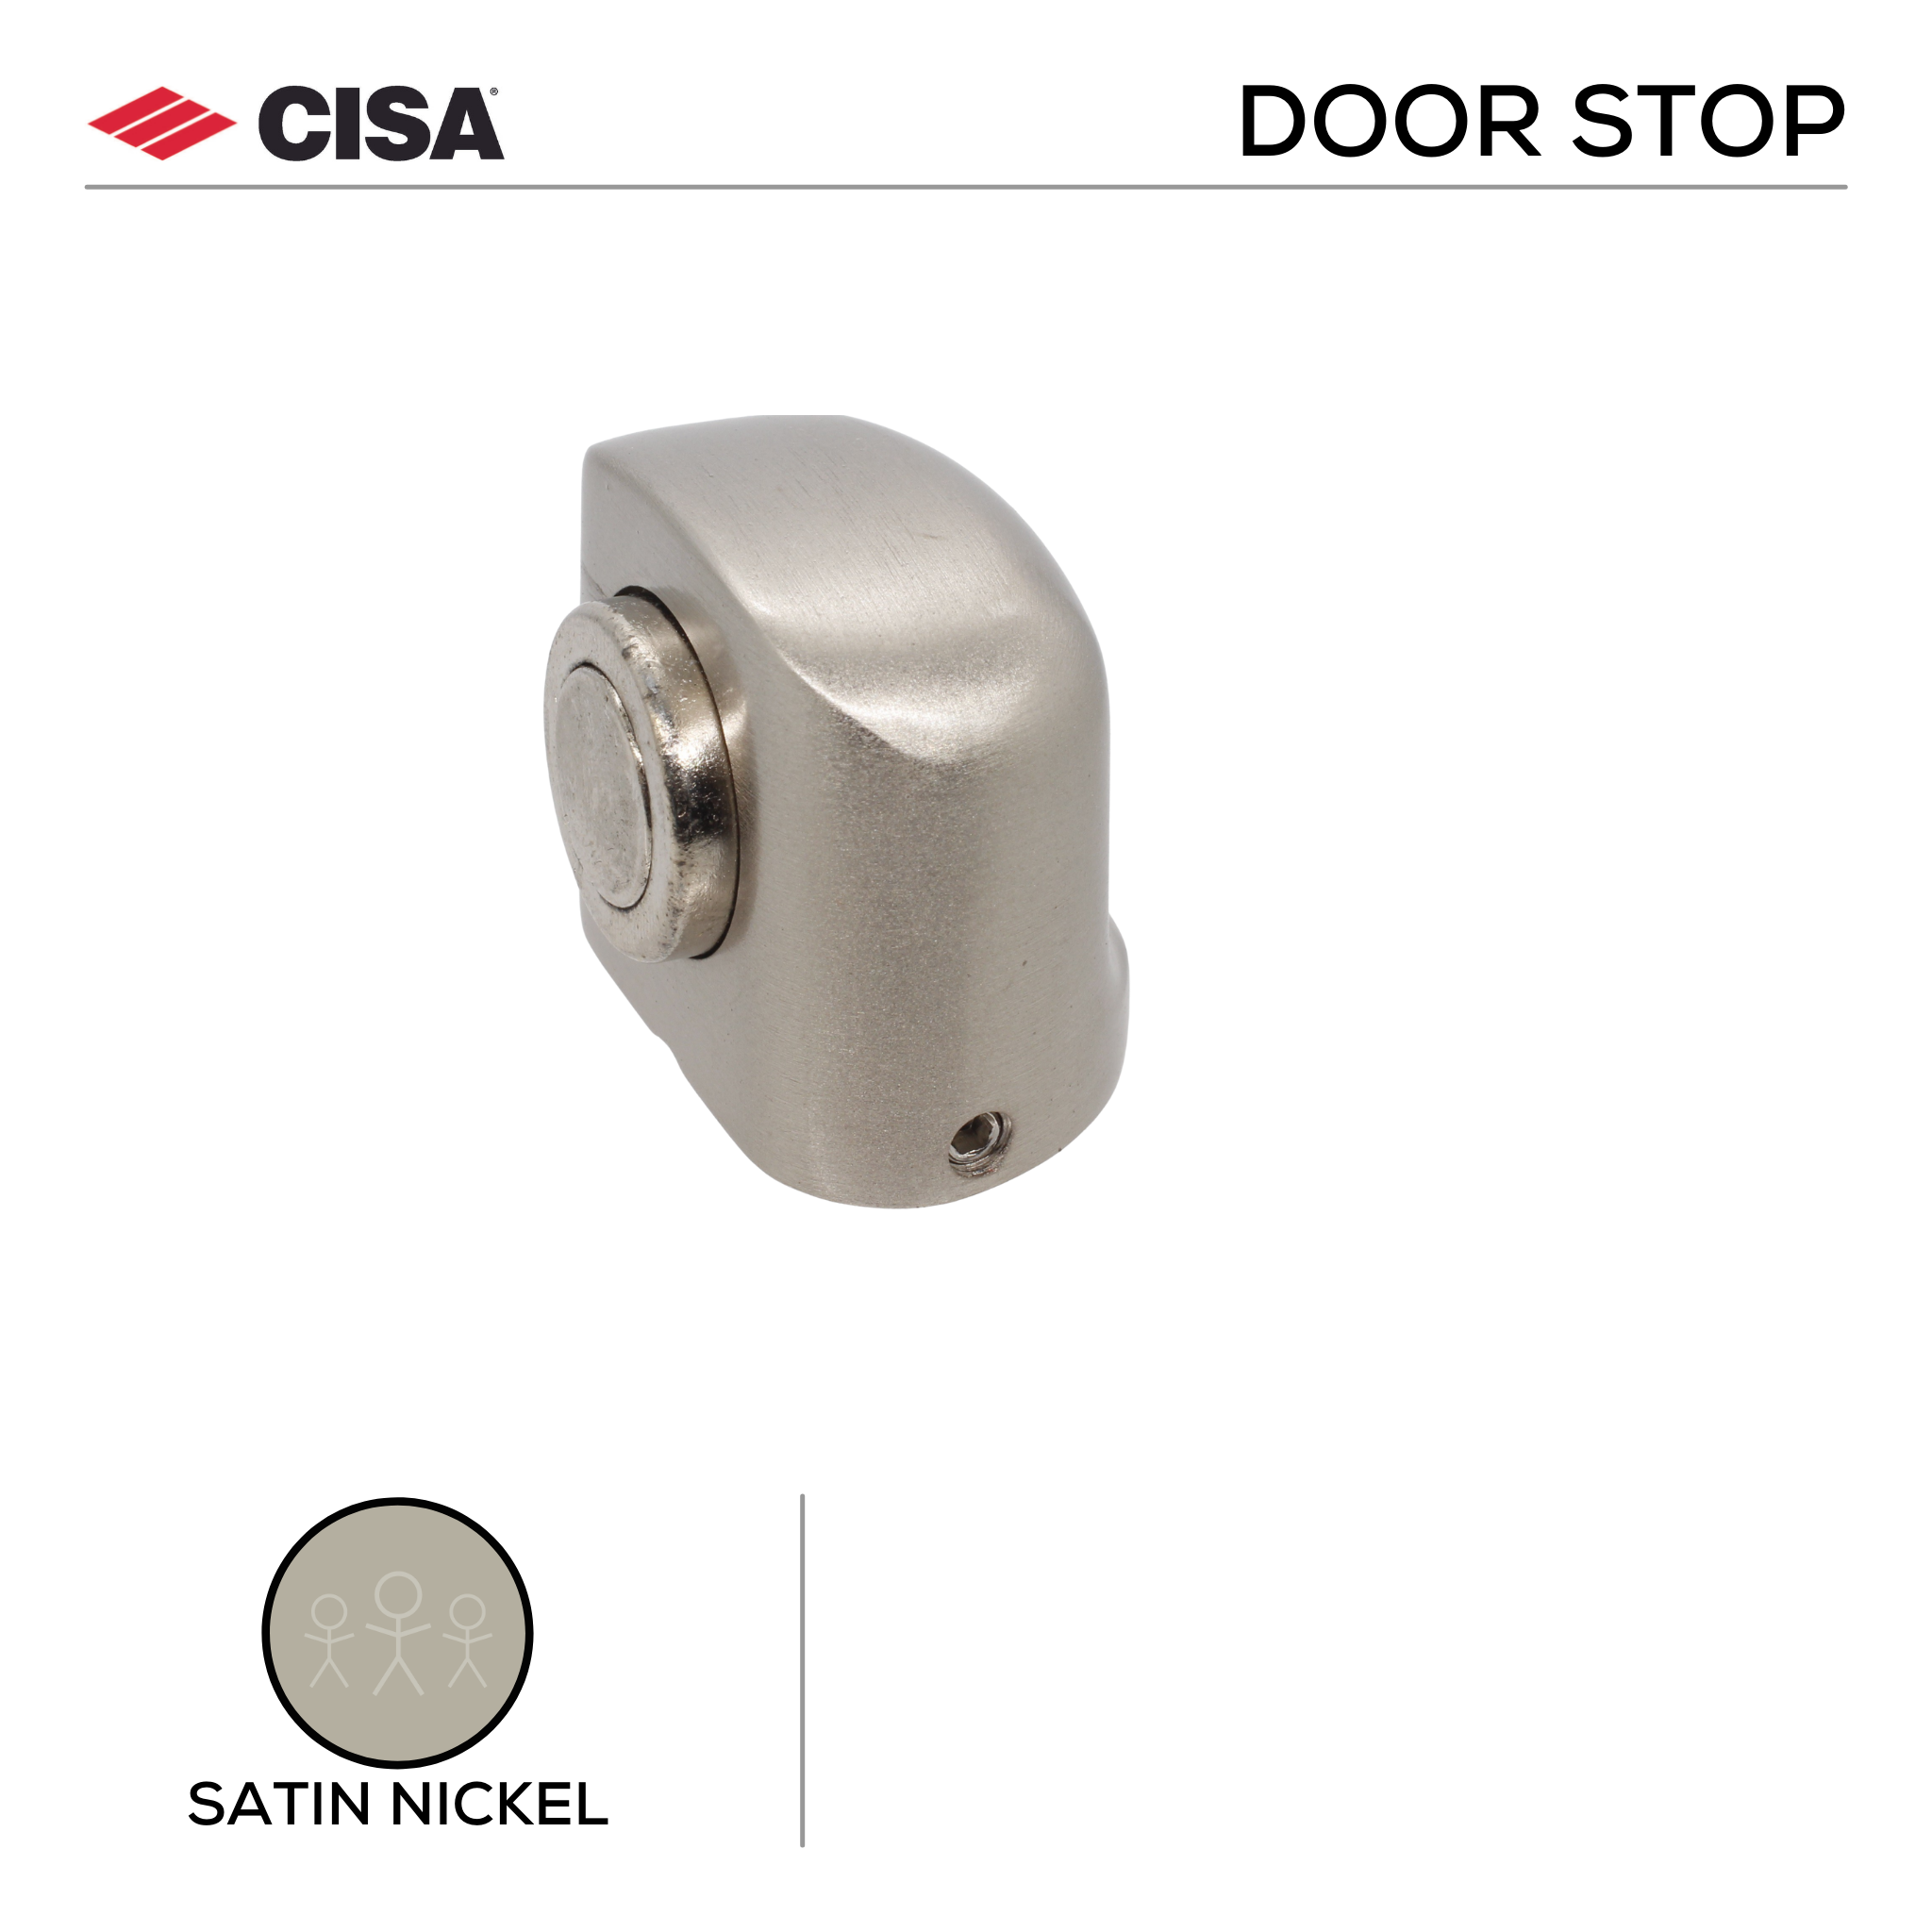 FMDS04.SN, Door Stop, Floor Mounted, Magnetic, 38mm (l) x 45mm (w), Satin Nickel, CISA